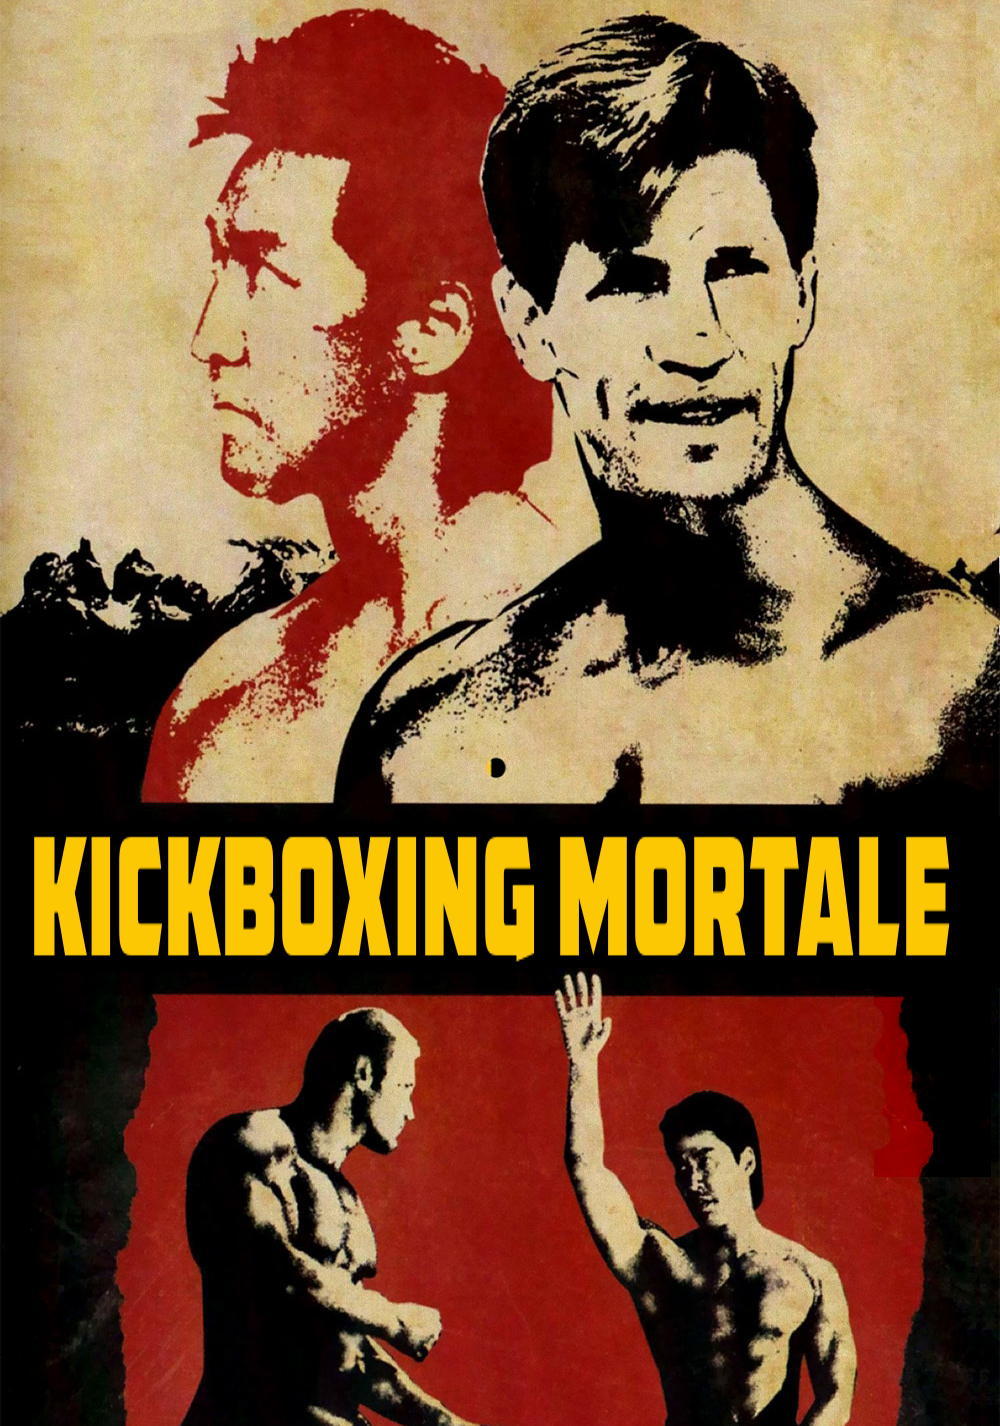 Kickboxing mortale [HD] (1993)